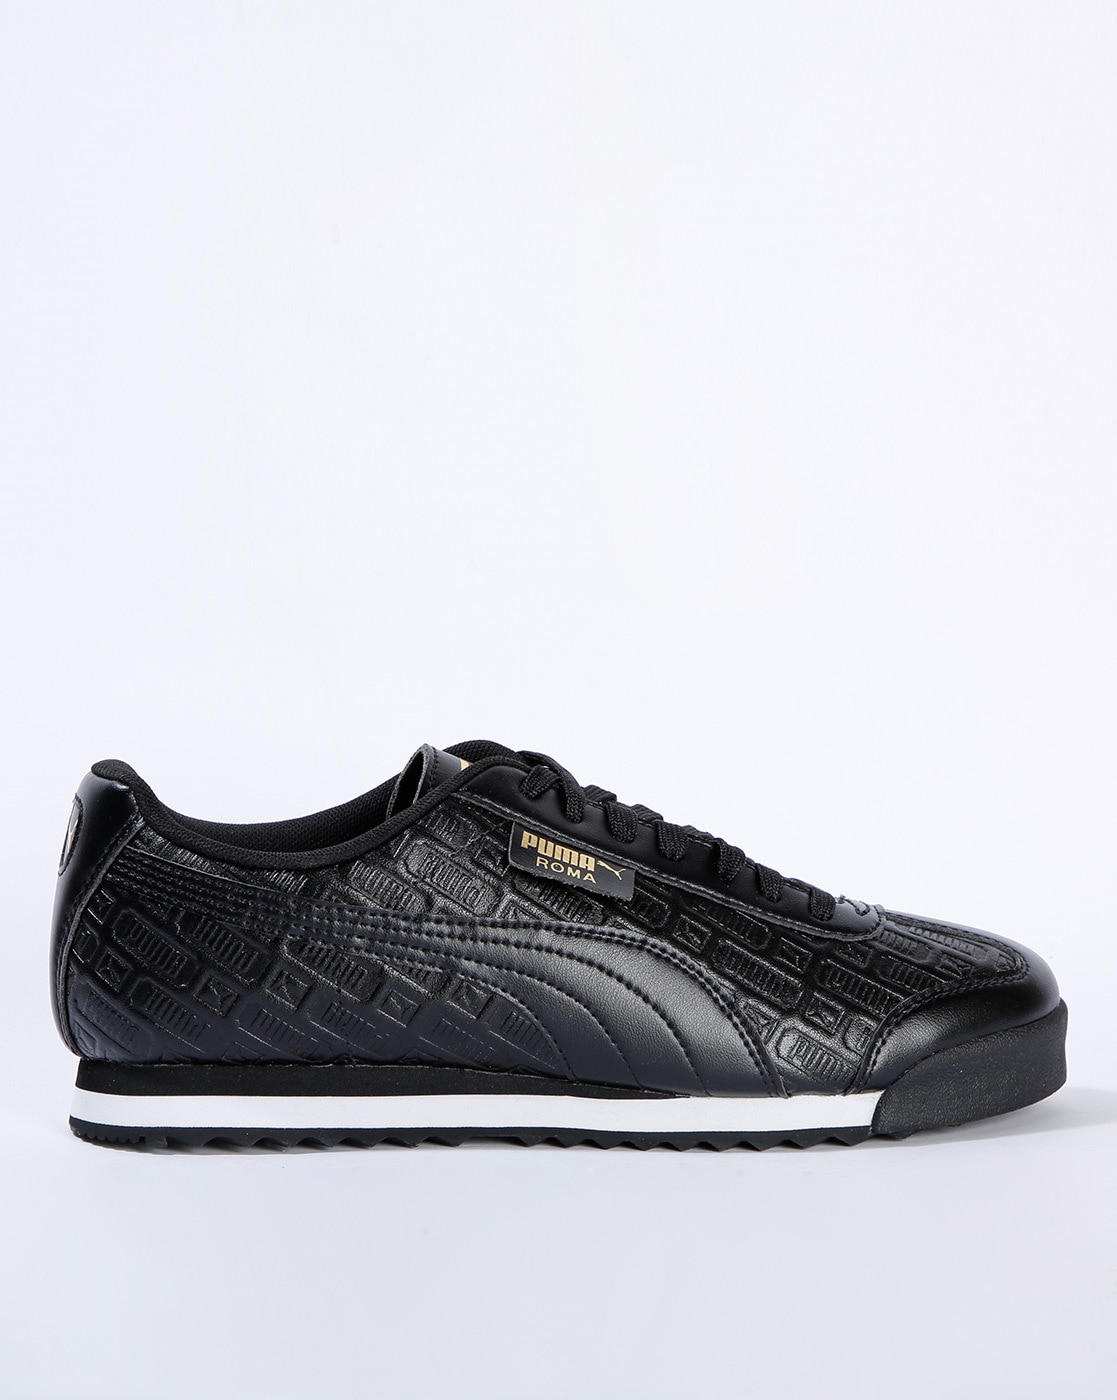 Puma RS-X Reinvent Black Sulphur - 371008-02 Women's Size 7.5 Sneakers Shoes  | eBay